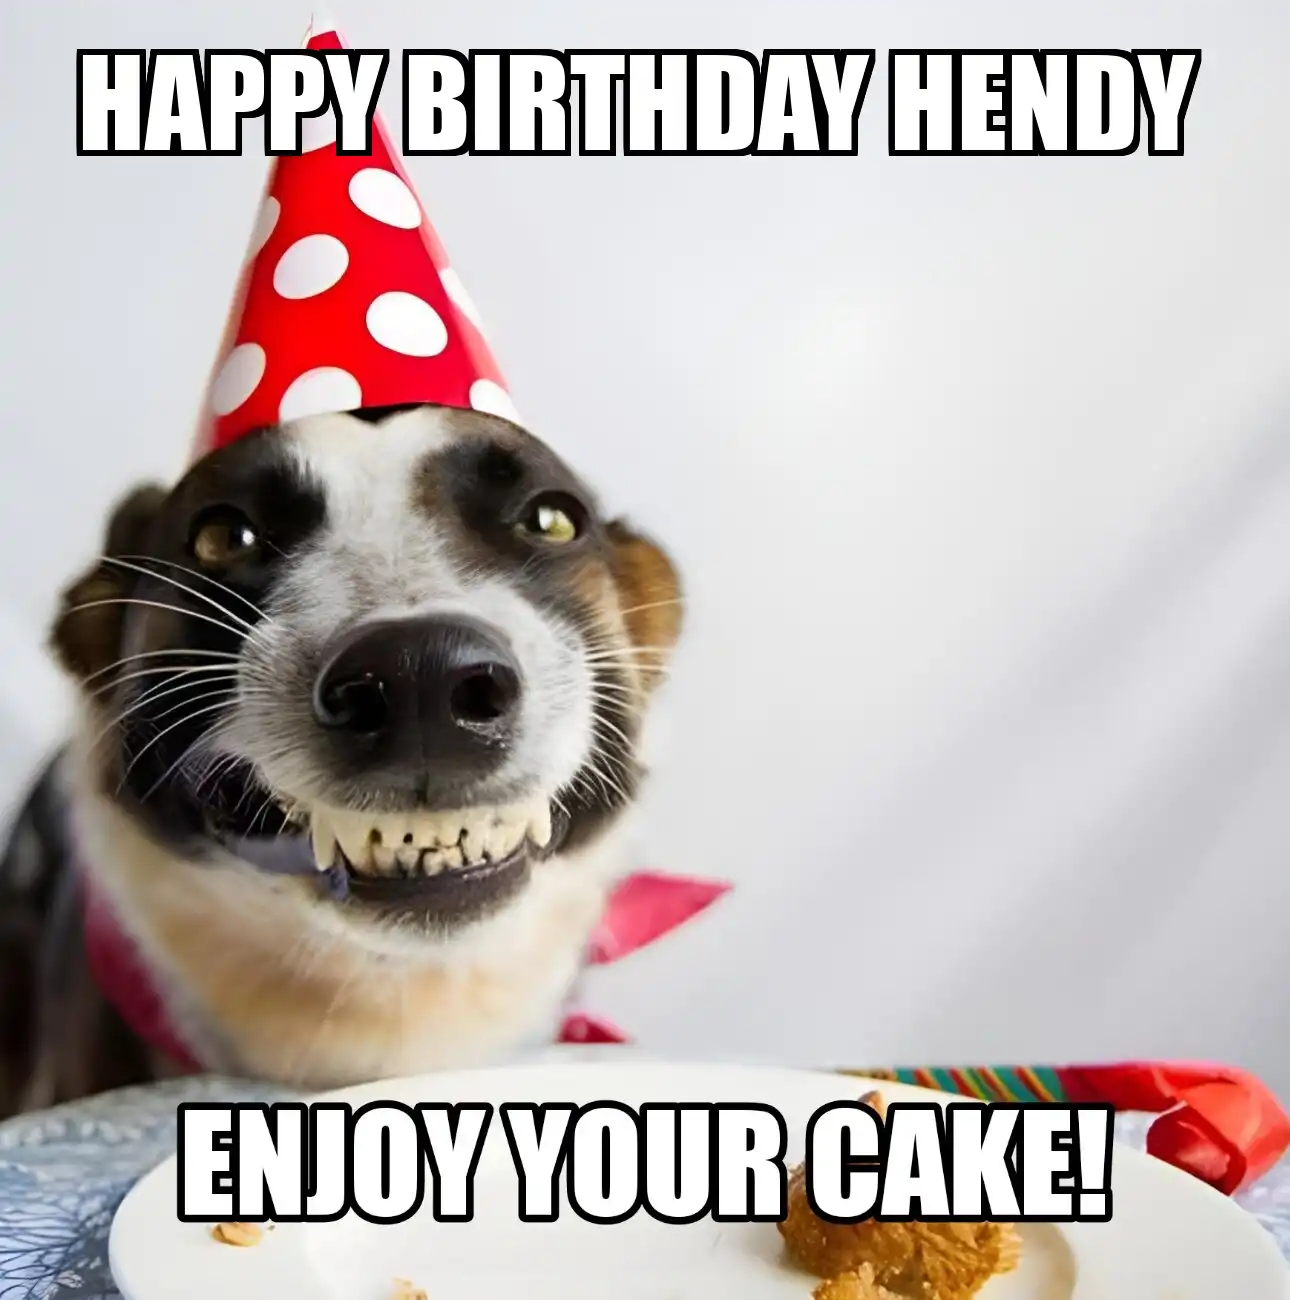 Happy Birthday Hendy Enjoy Your Cake Dog Meme